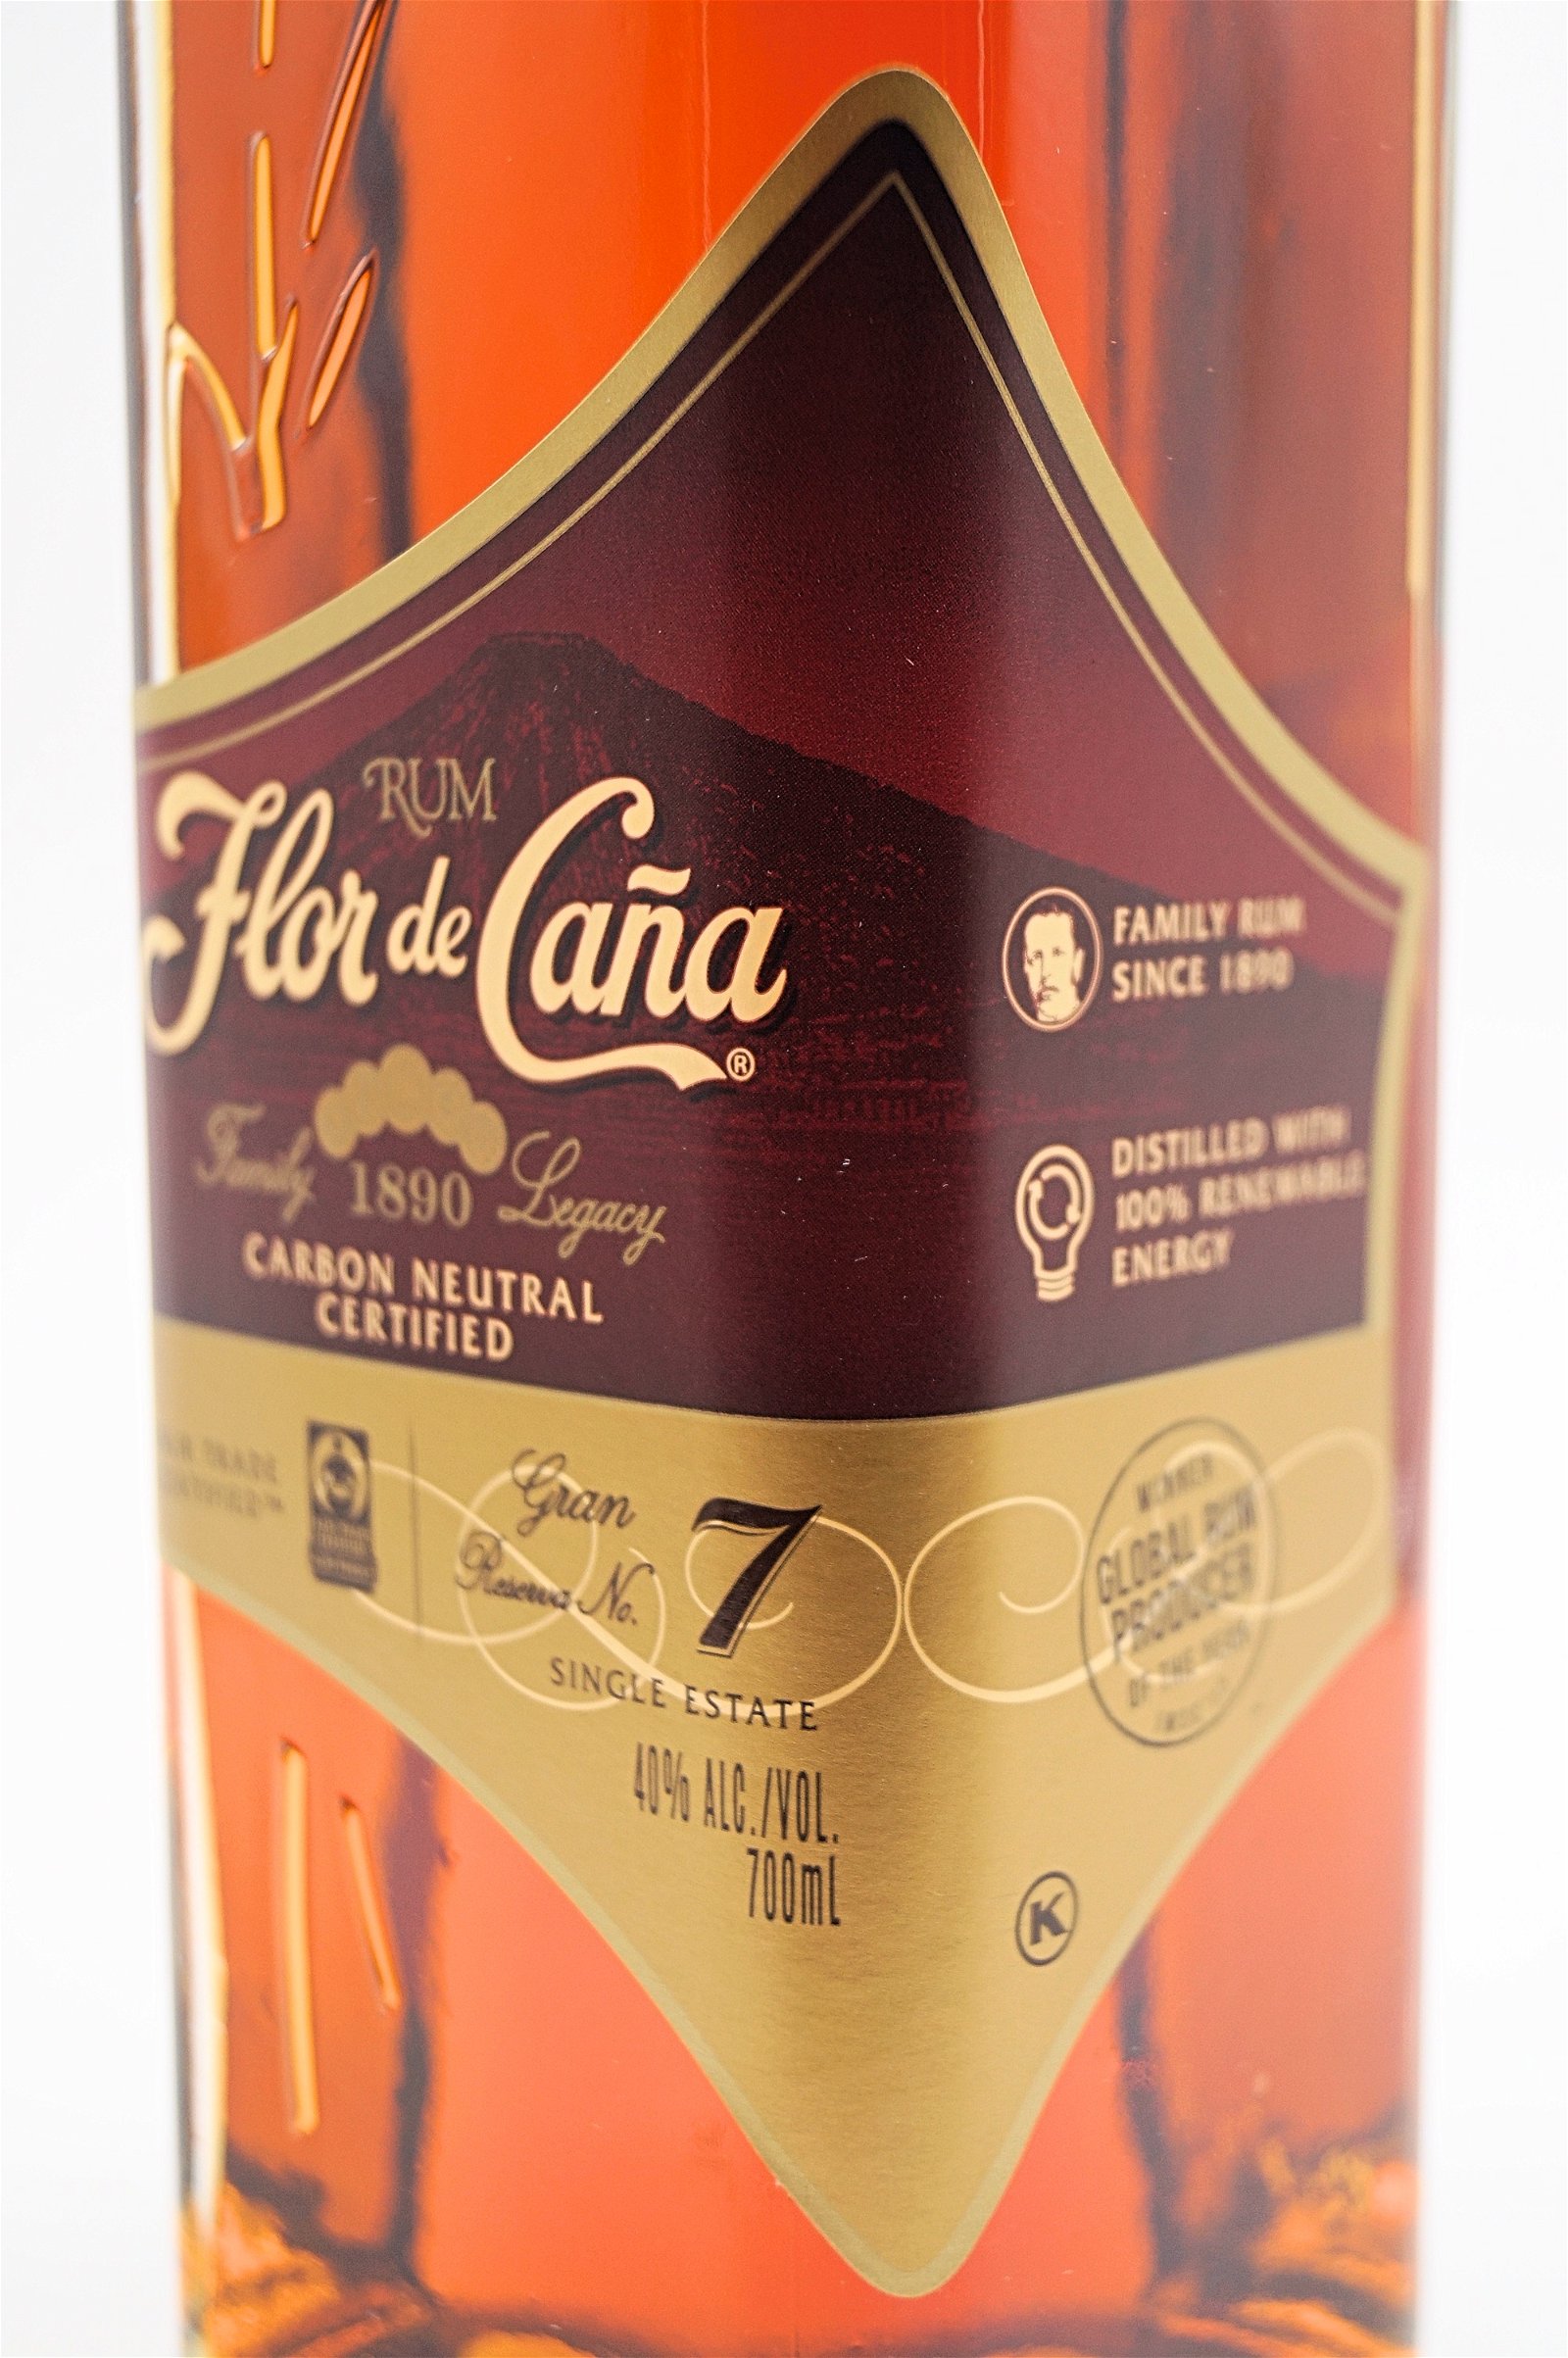 Flor de Cana 7 Jahre Gran Reserva Rum